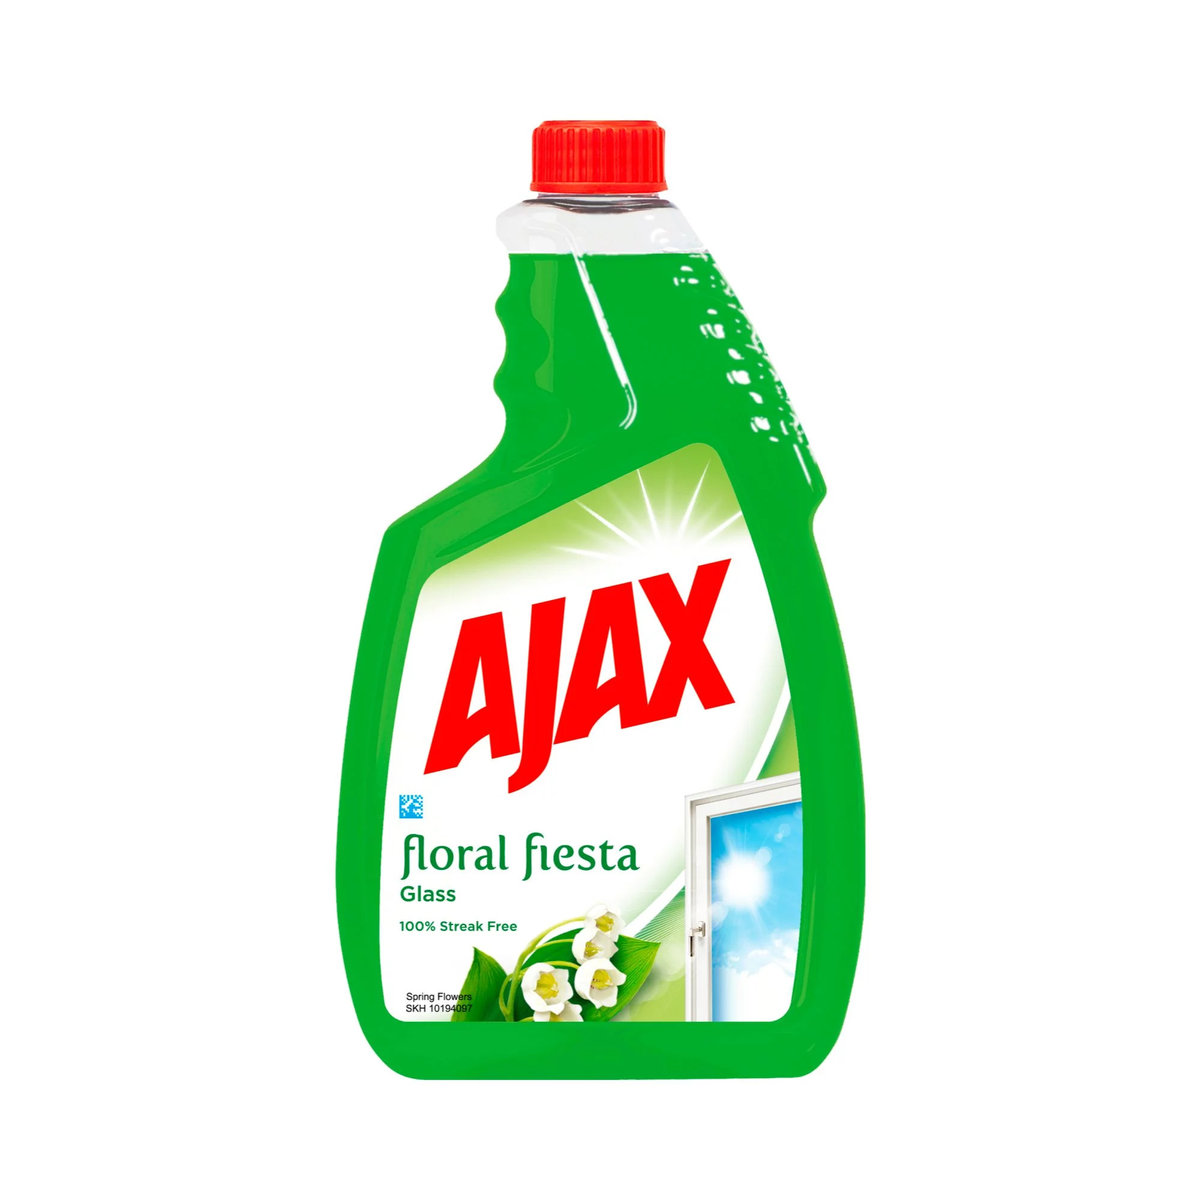 Ajax płyn do szyb 750ml floral fiesta zapas (264597)